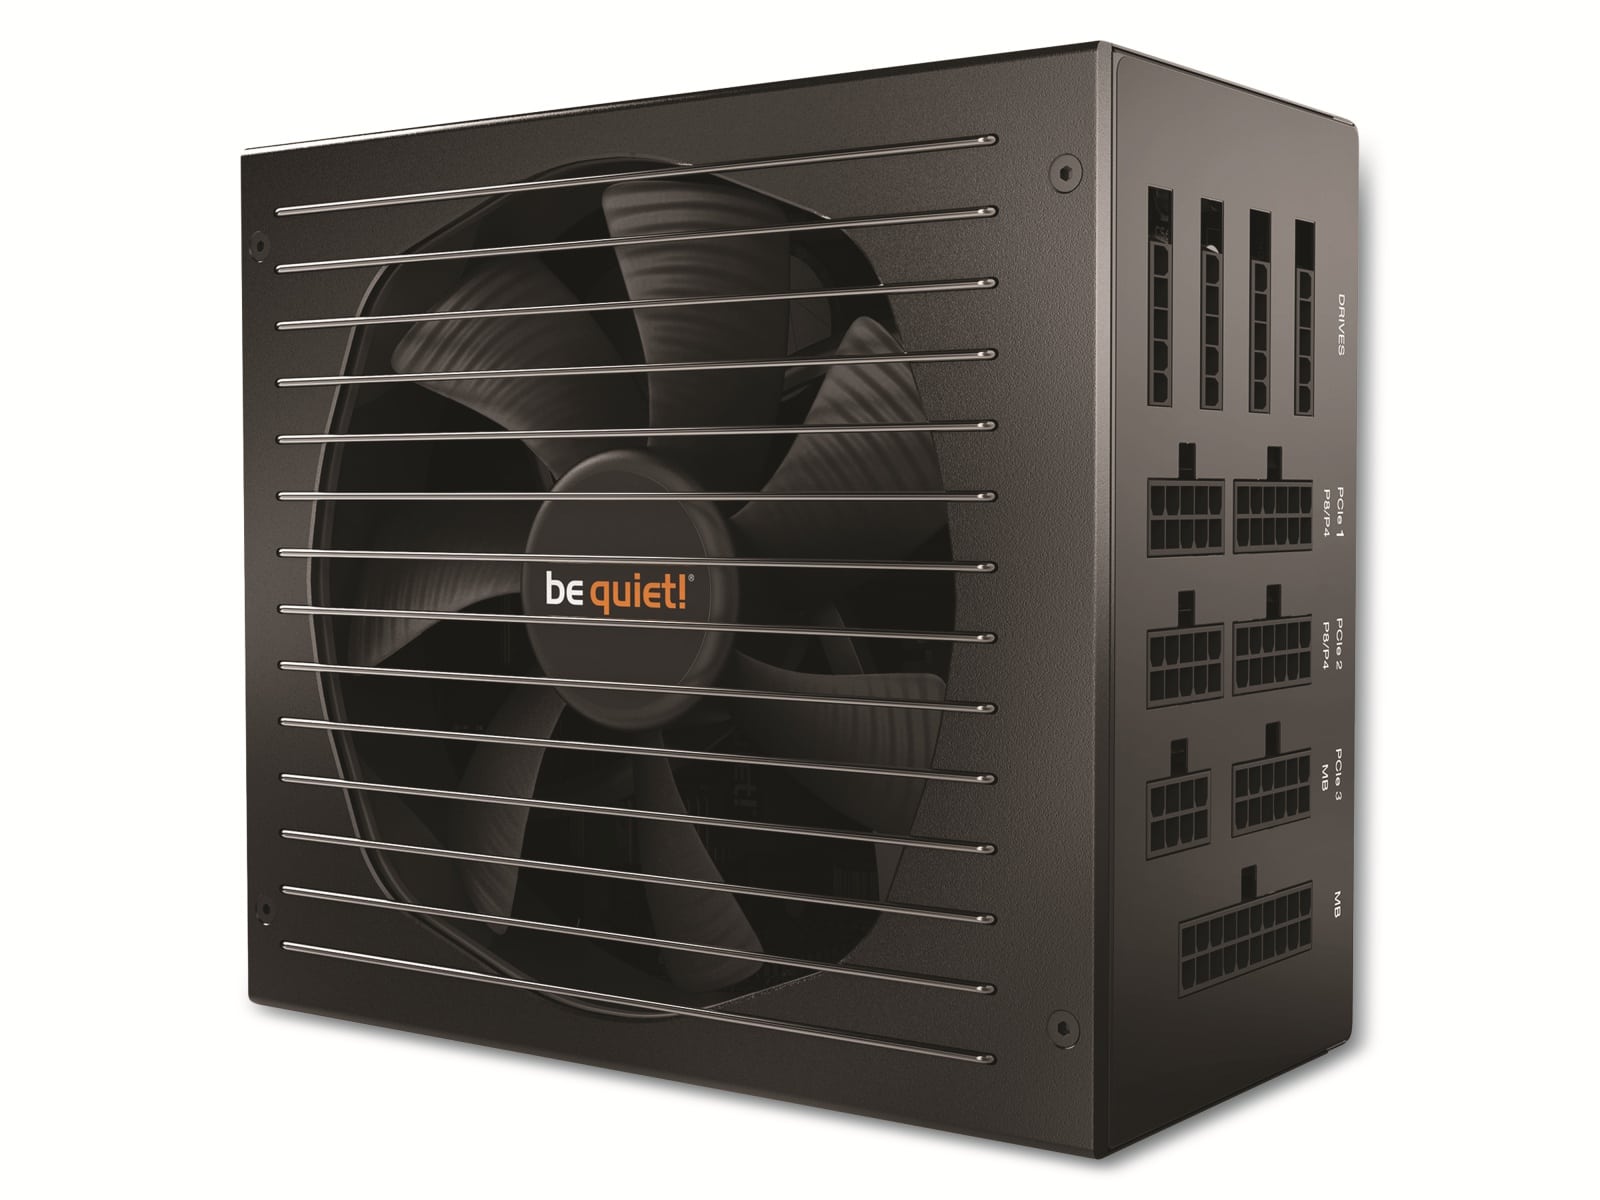 BE QUIET! PC-Netzteil Straight Power 11, 1200W, 80+ Platinum